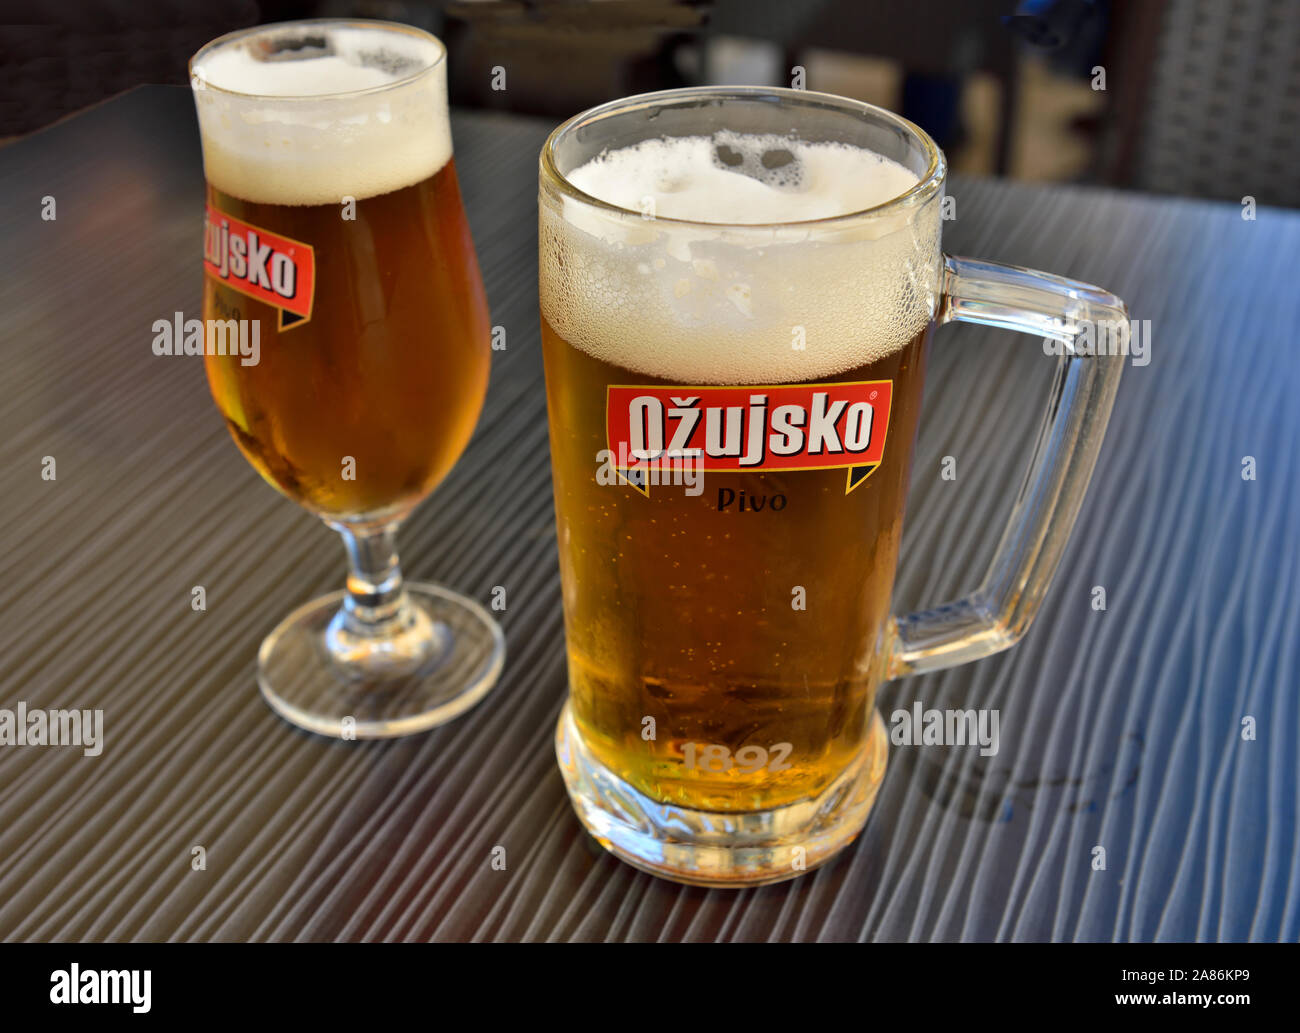 Verres de bière croate Ozujsko sur table Banque D'Images